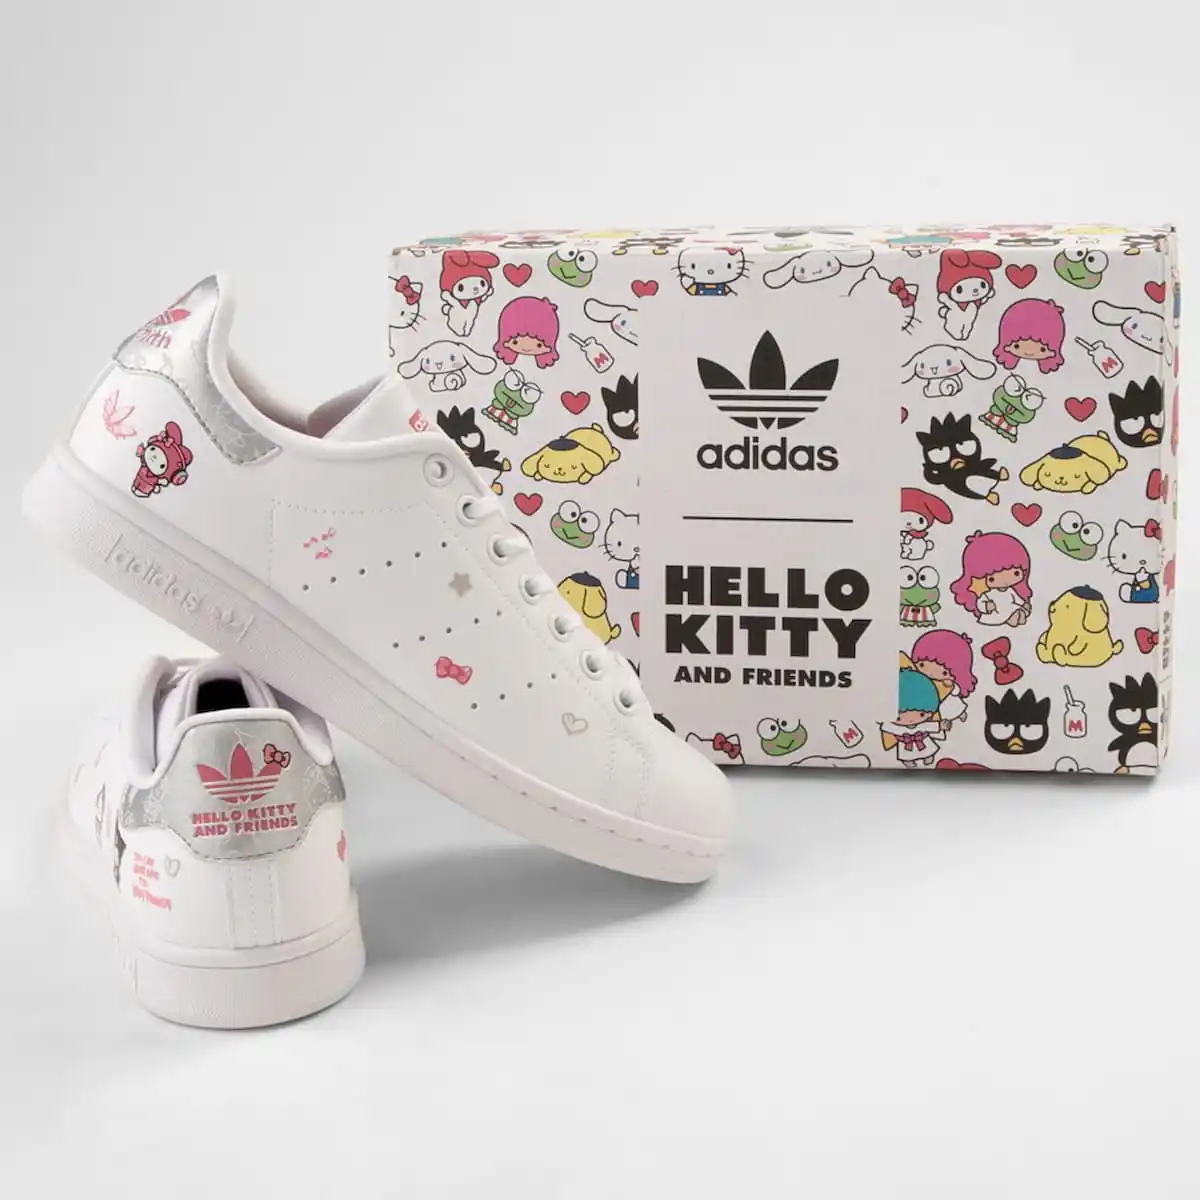 Adidas Stan Smith x Hello Kitty sneakers.